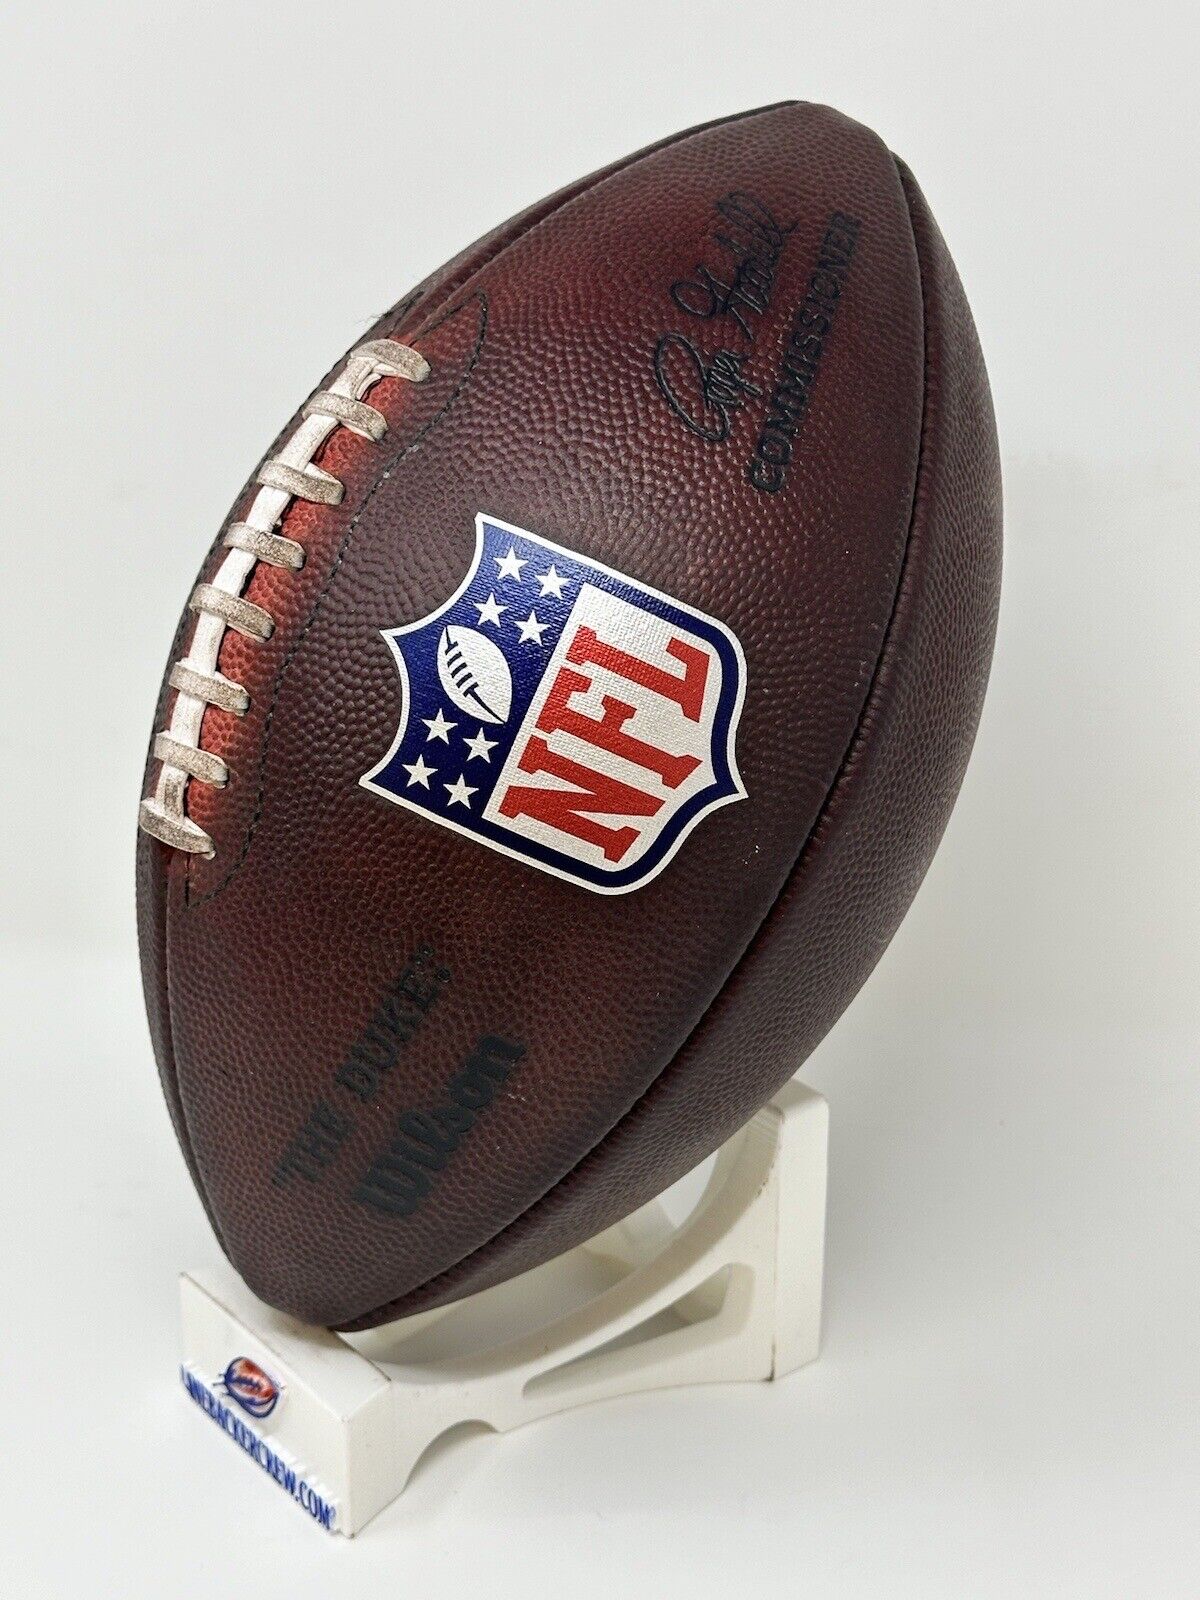 Prepped NFL Footballs Duke – Football Fully The Game Wilson LLC LBC